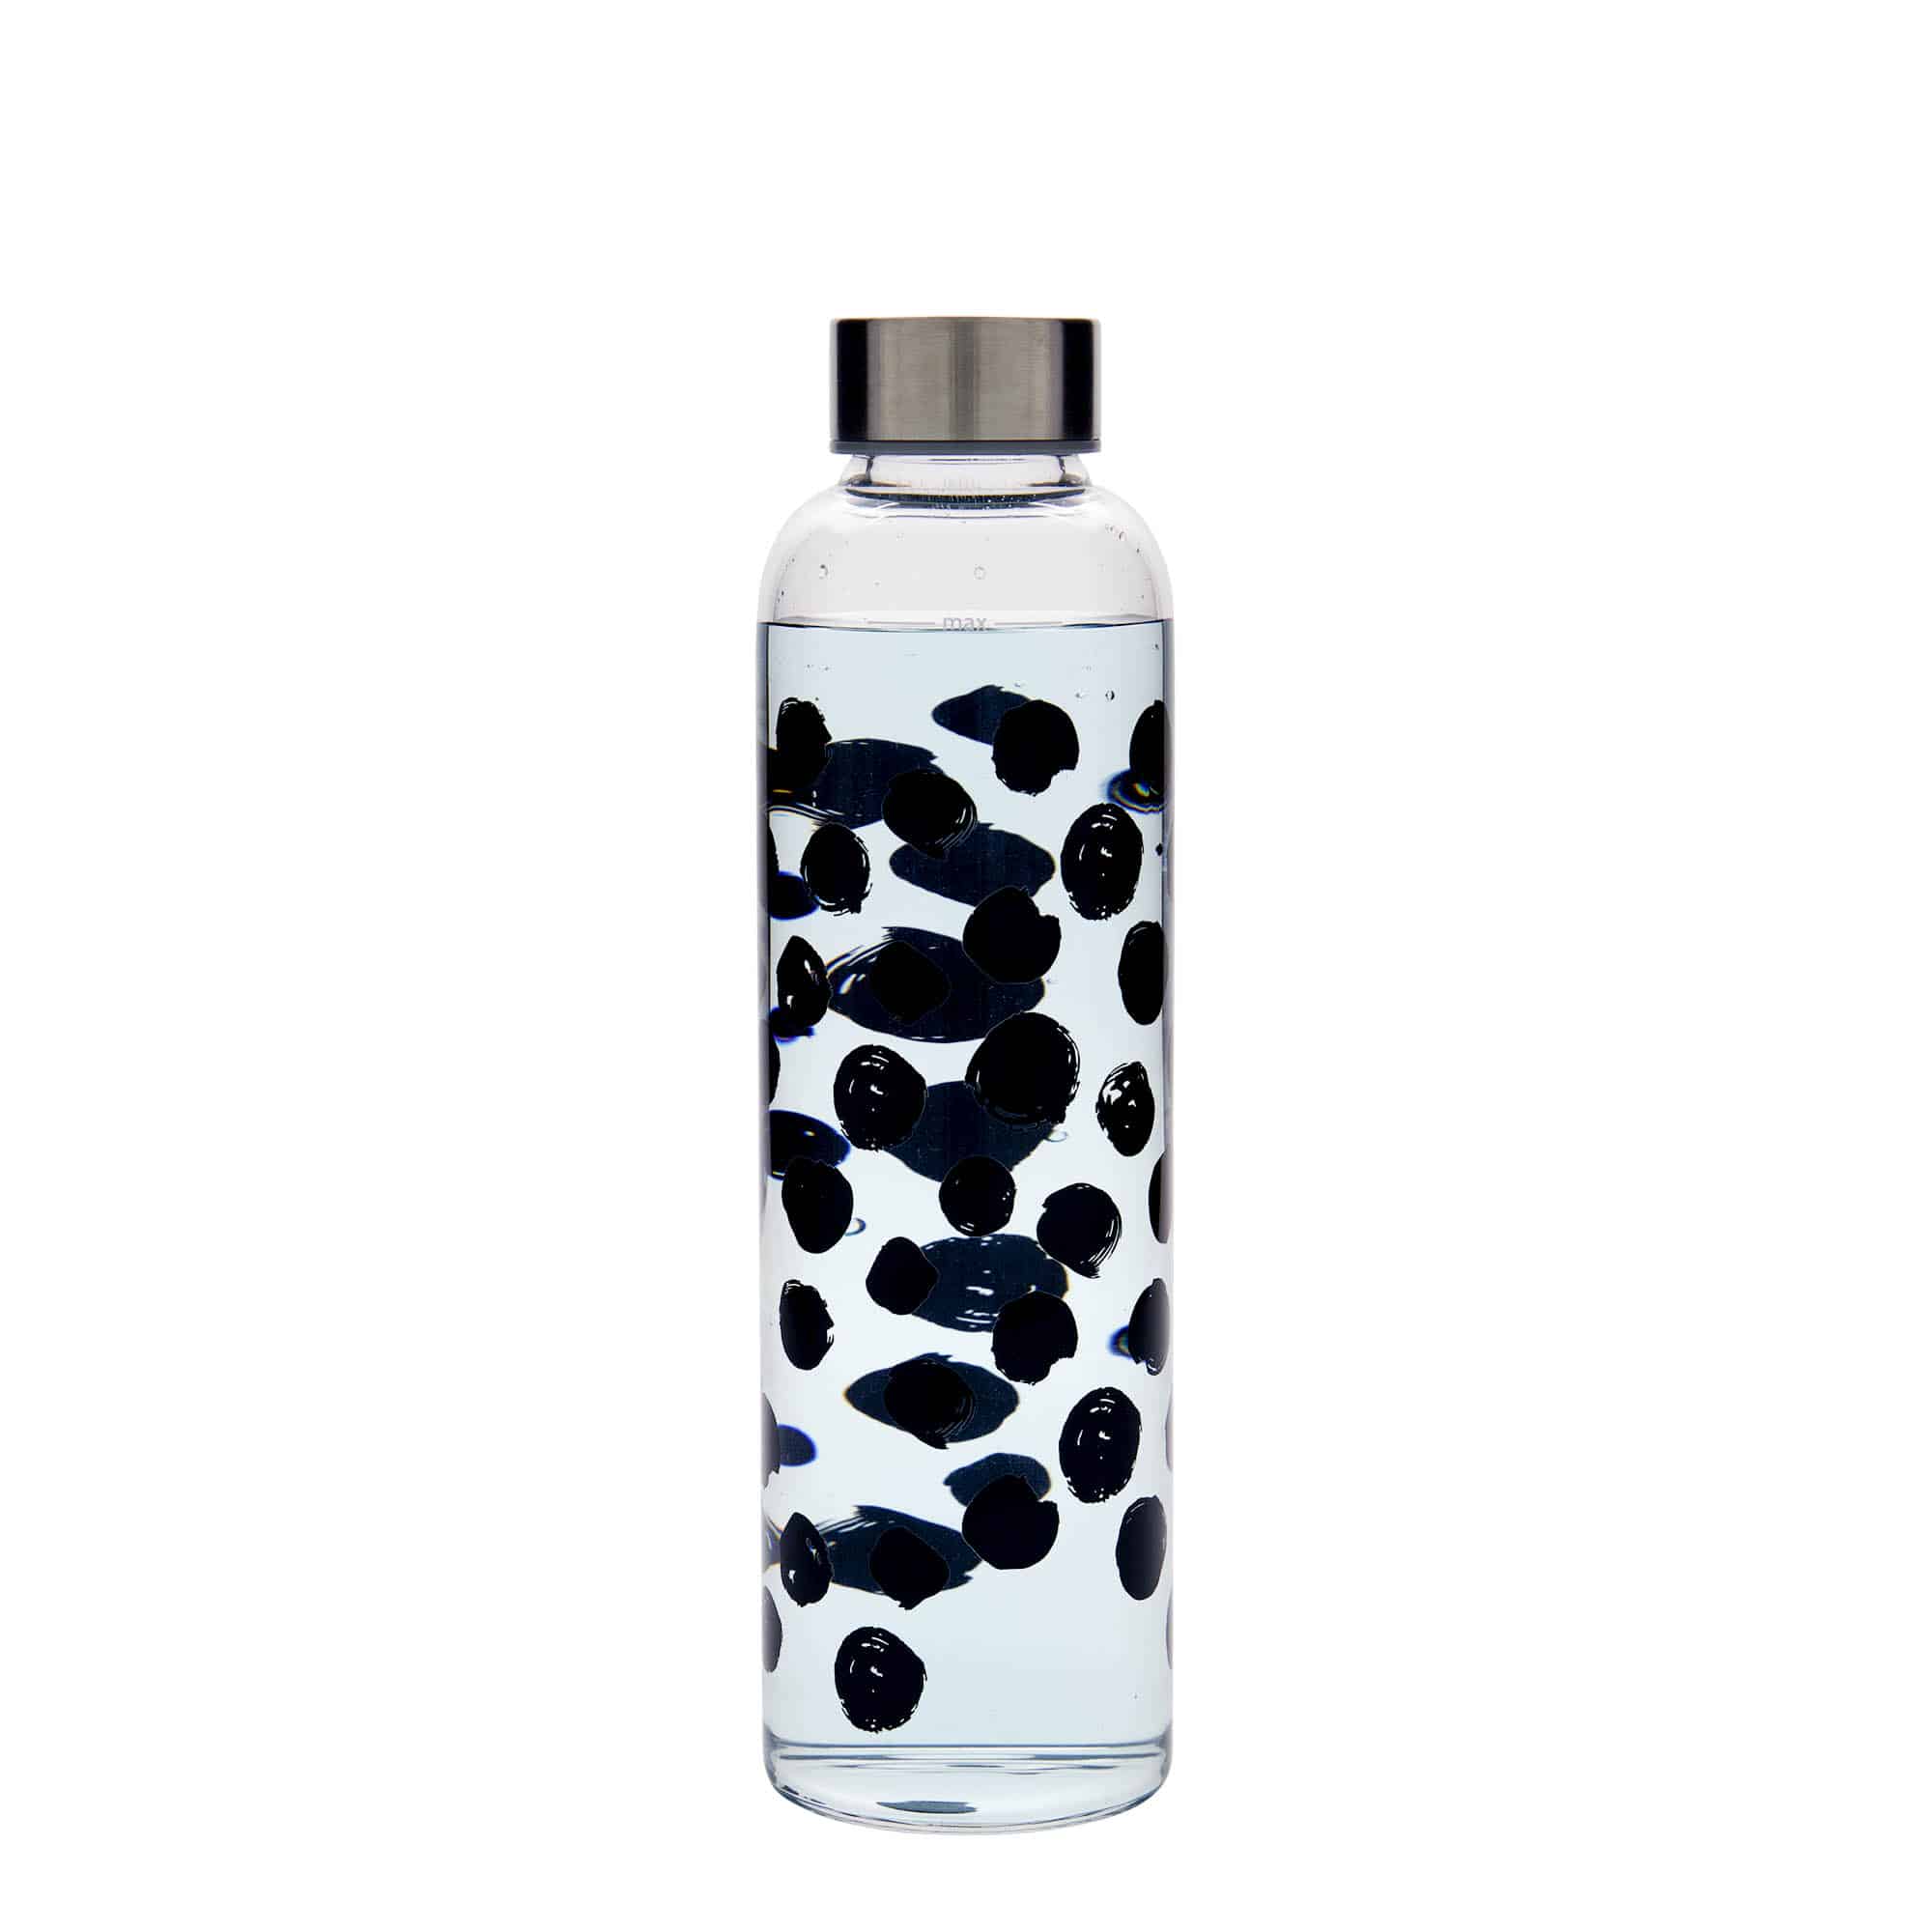 500 ml-es ivópalack, 'Perseus', motívum: Fekete pontok, szájnyílás: csavaros kupak